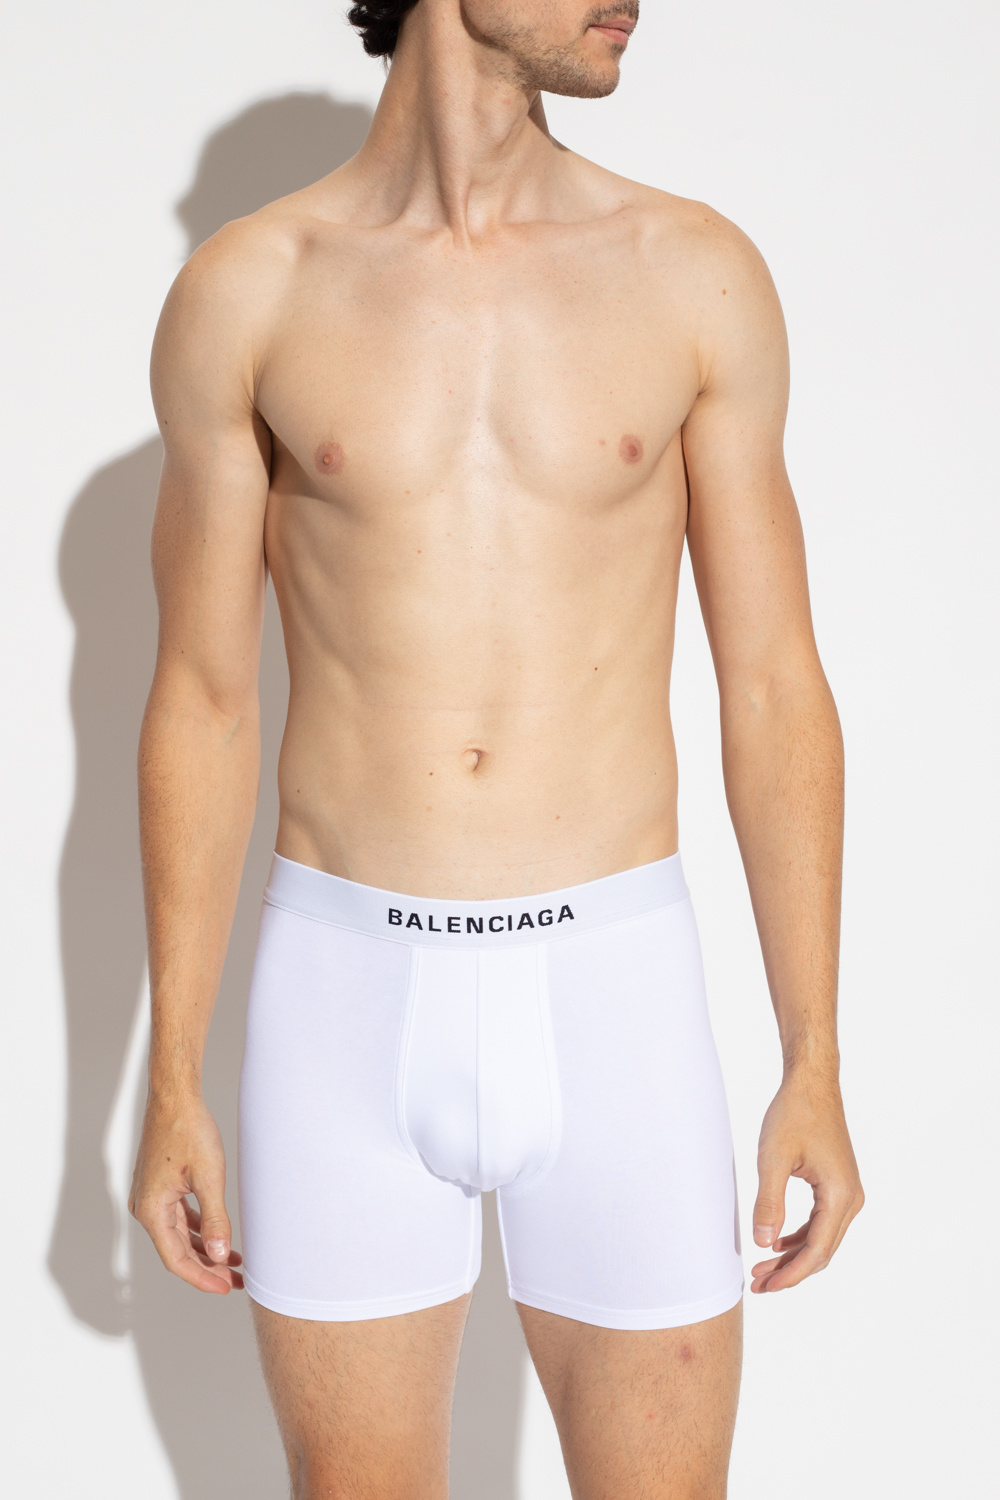 Balenciaga Boxers with logo, Men's Clothing